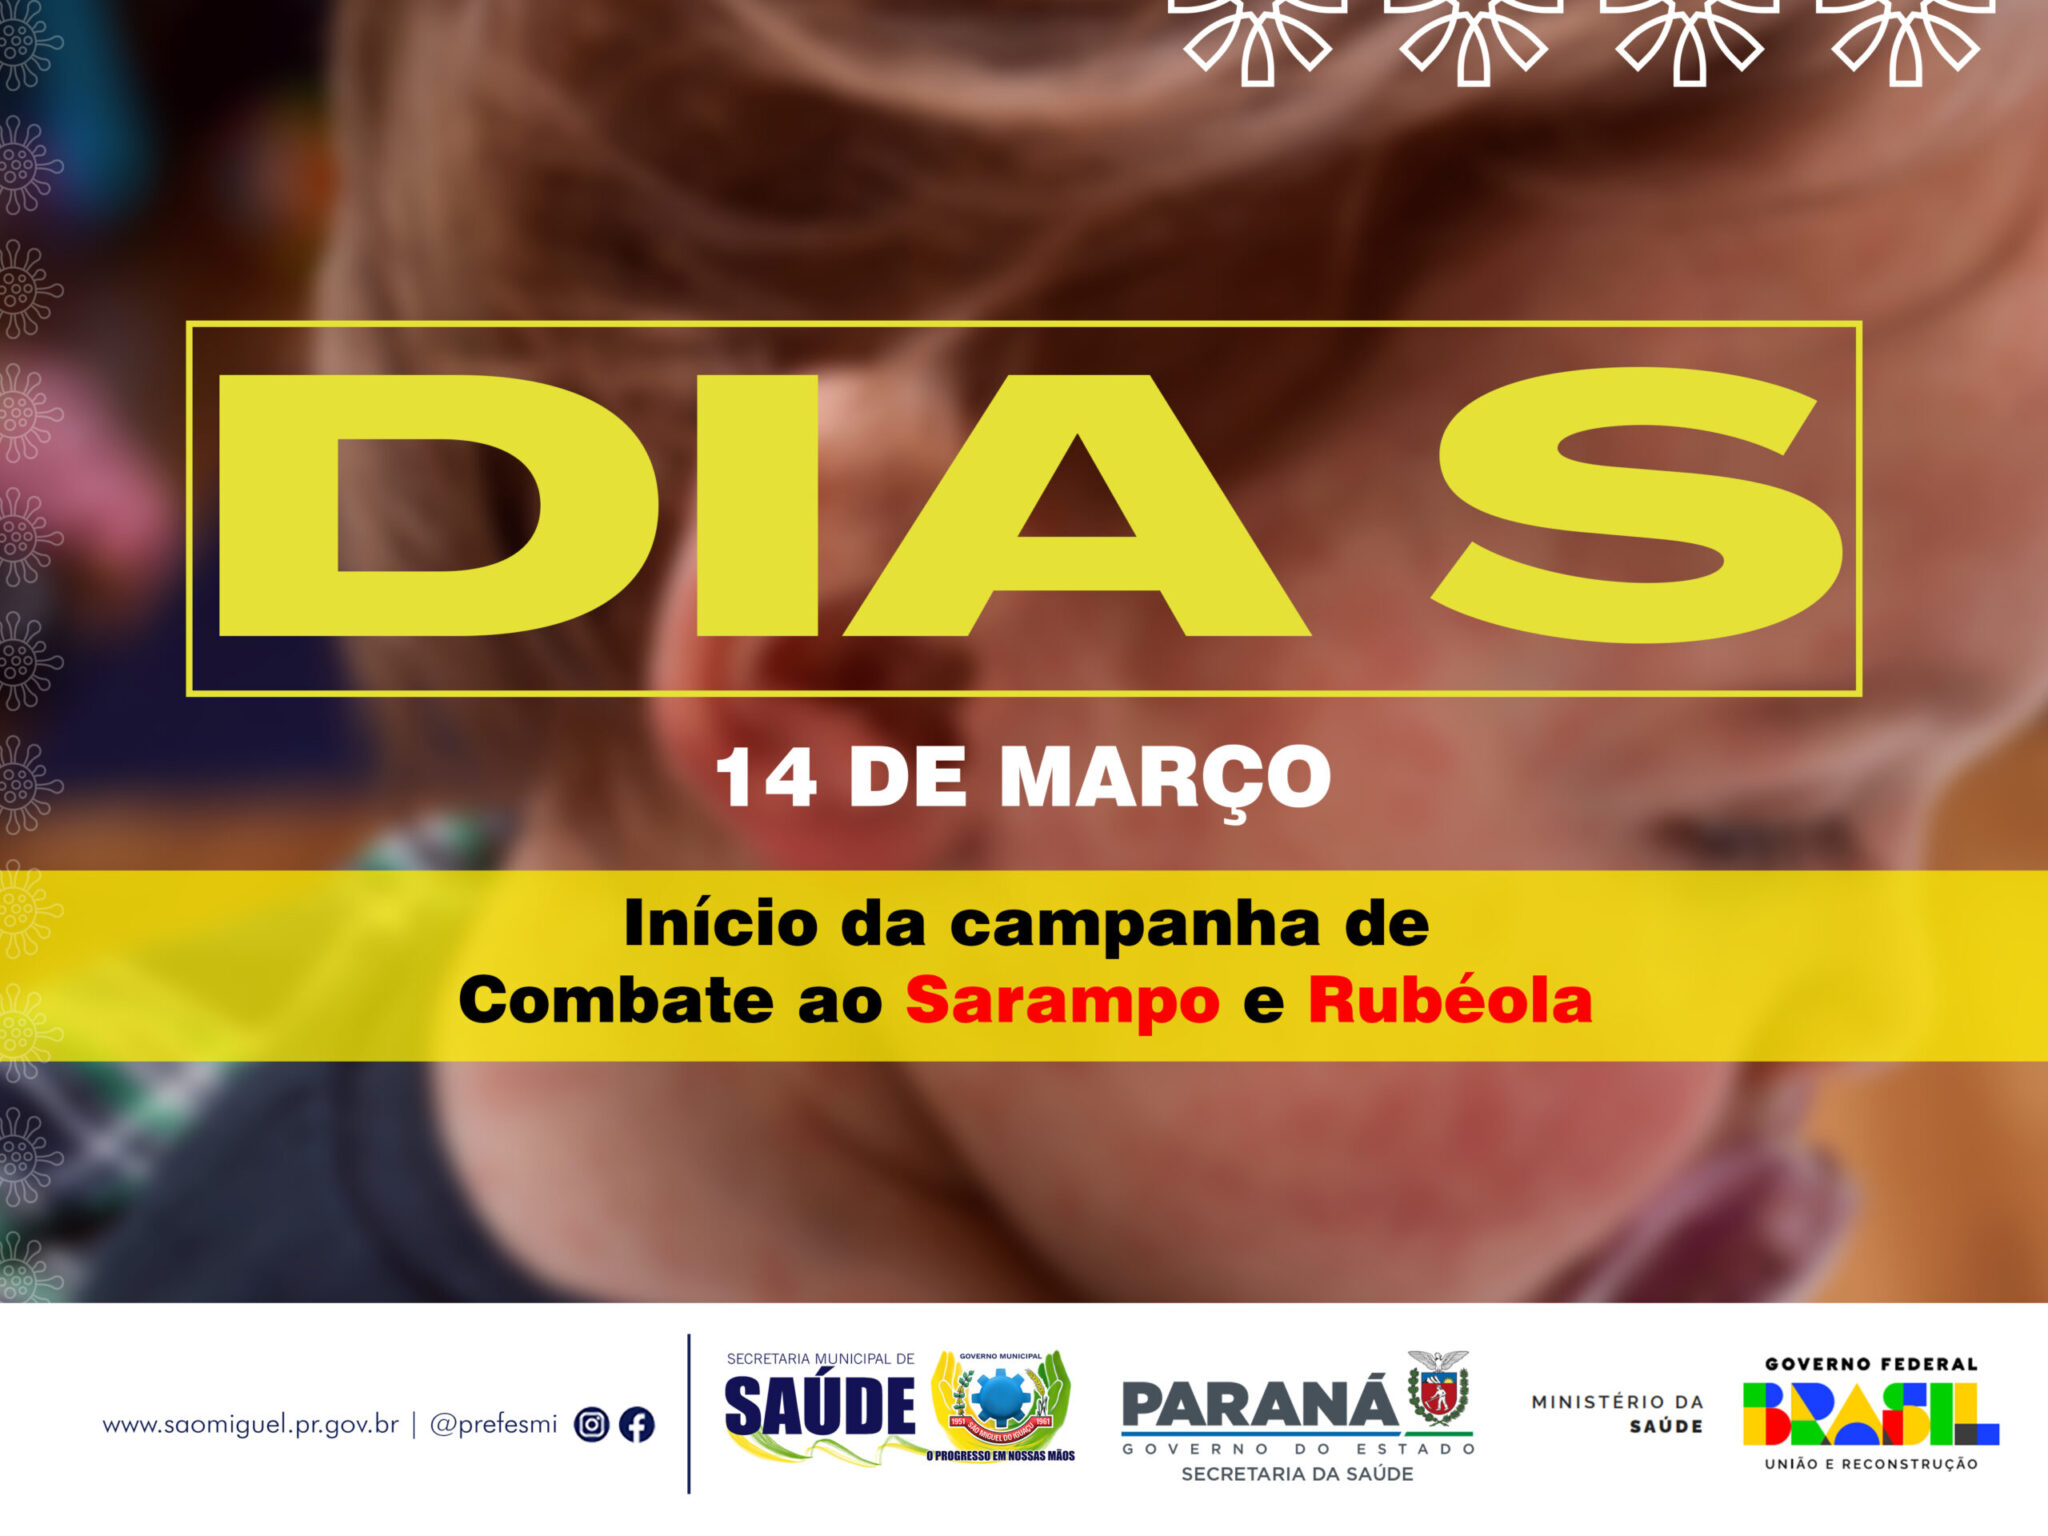 ‘Campanha de Conscientização: Dia S de Combate ao Sarampo e Rubéola em São Miguel do Iguaçu’ 🛡️